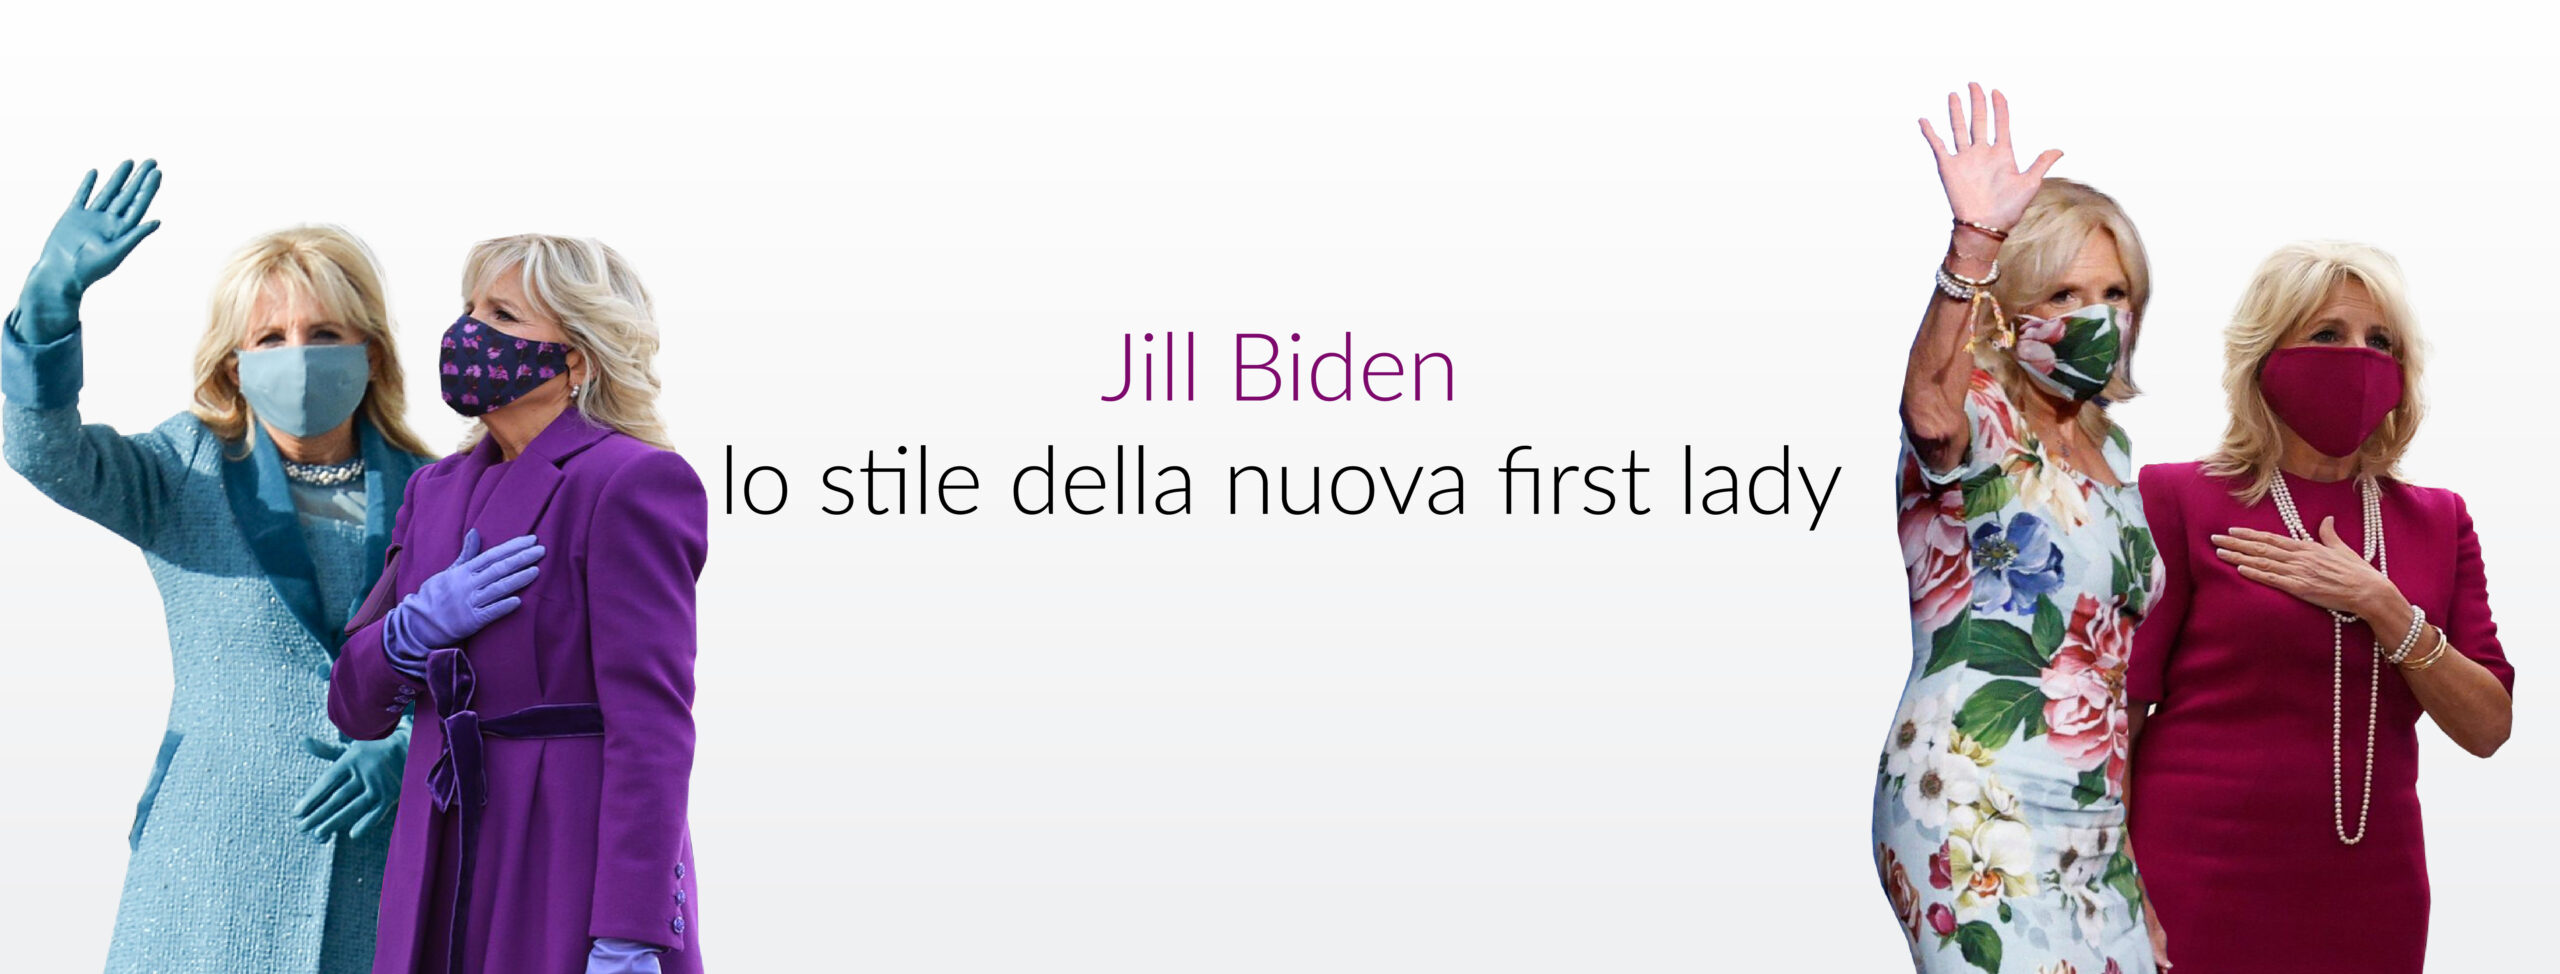 Jill Biden lo stile della nuova first lady